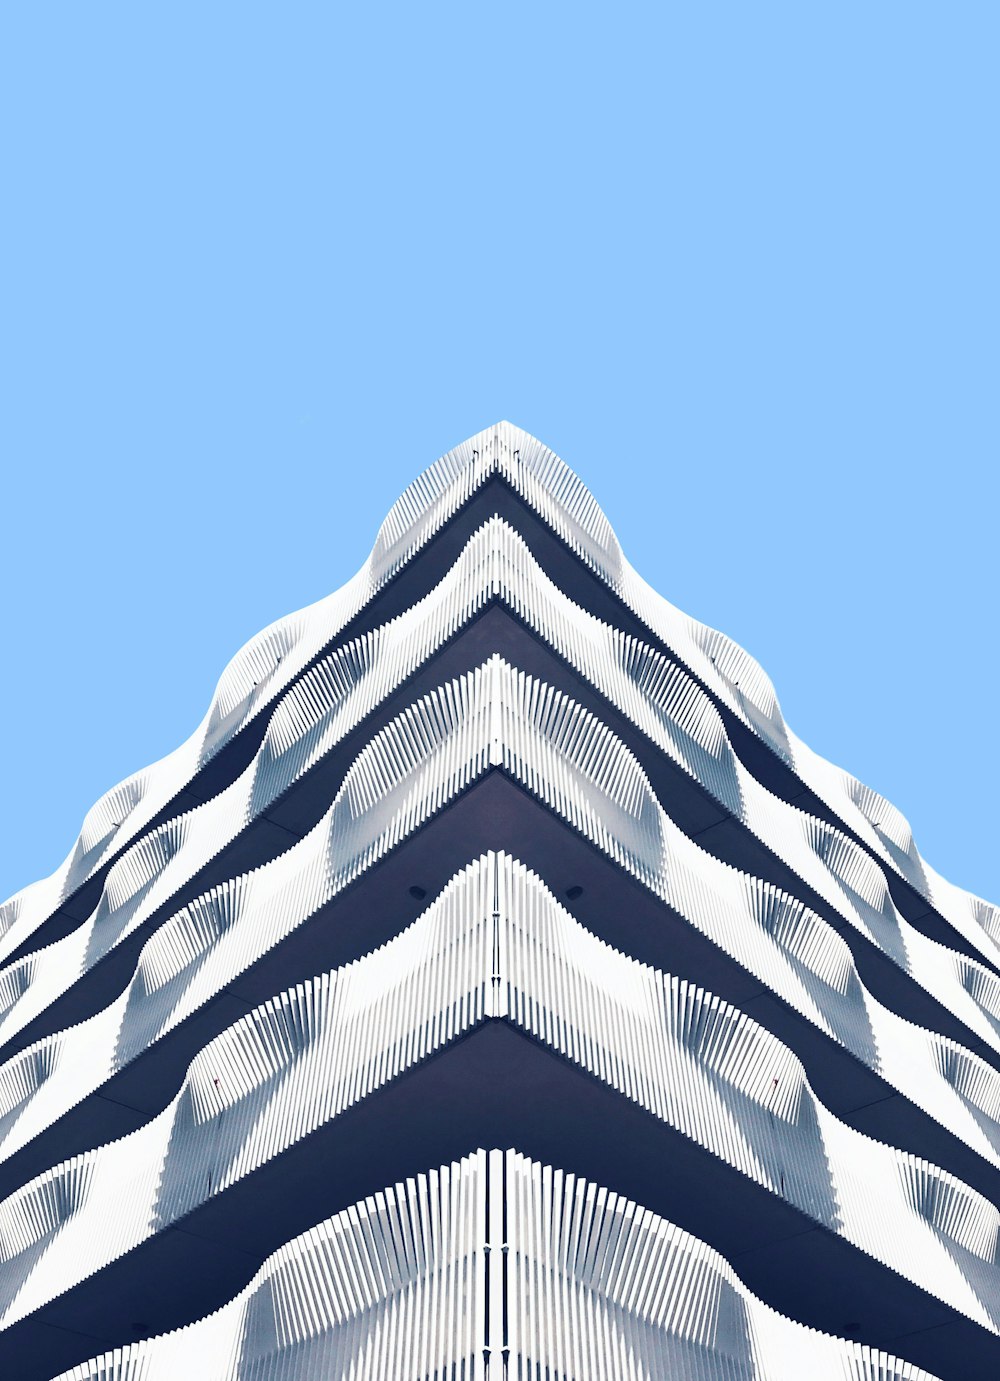 Architekturfotografie der weißen Struktur